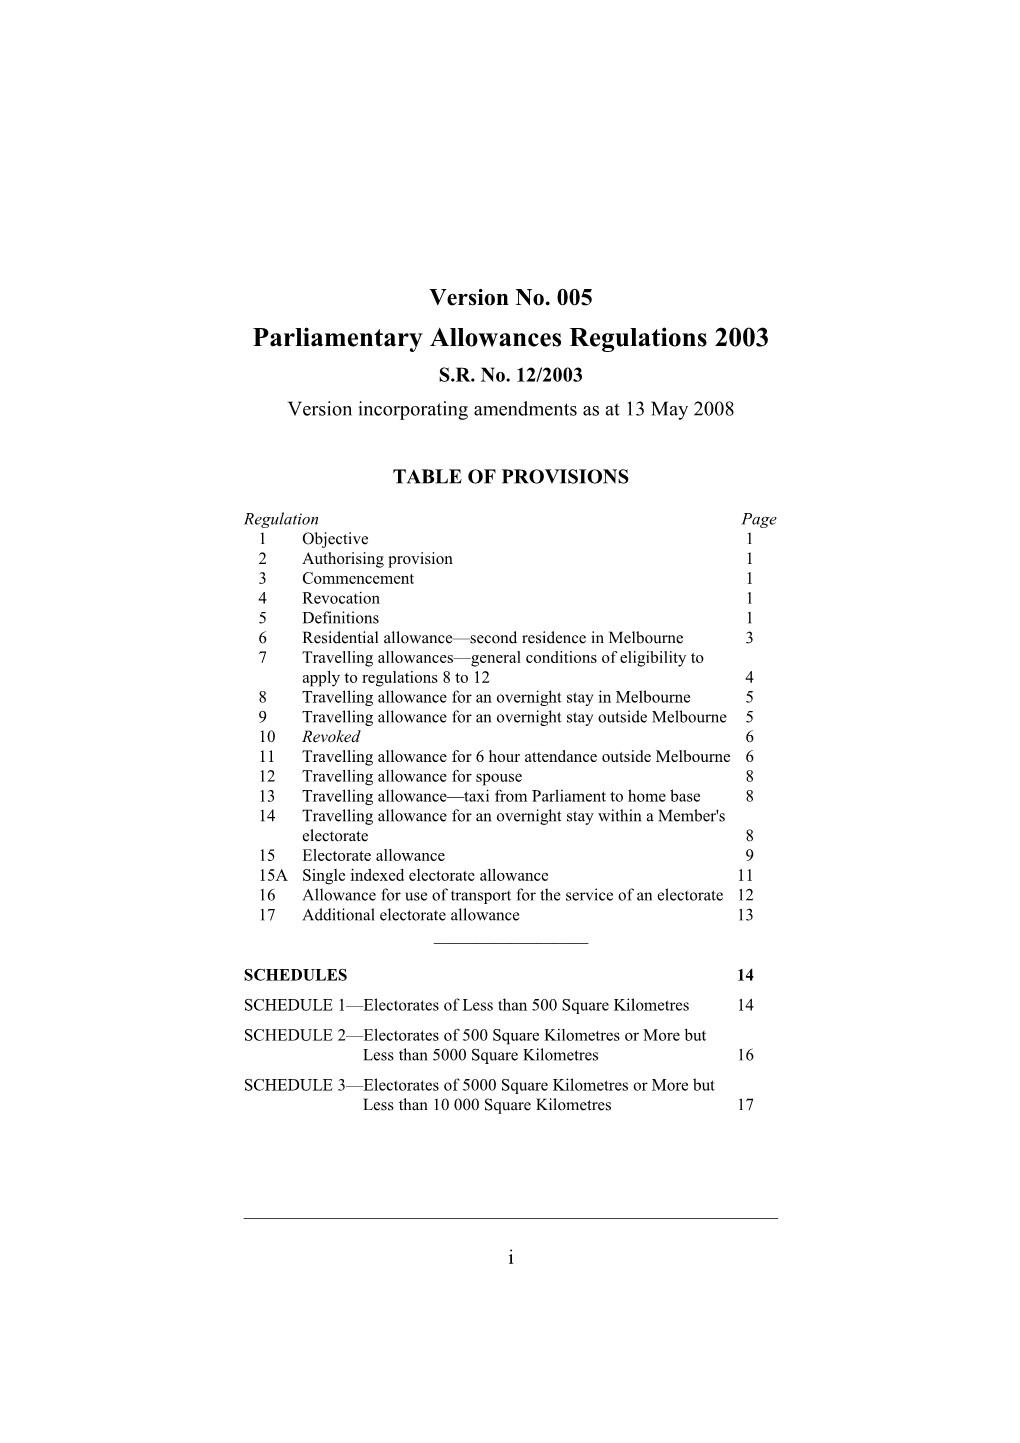 Parliamentary Allowances Regulations 2003